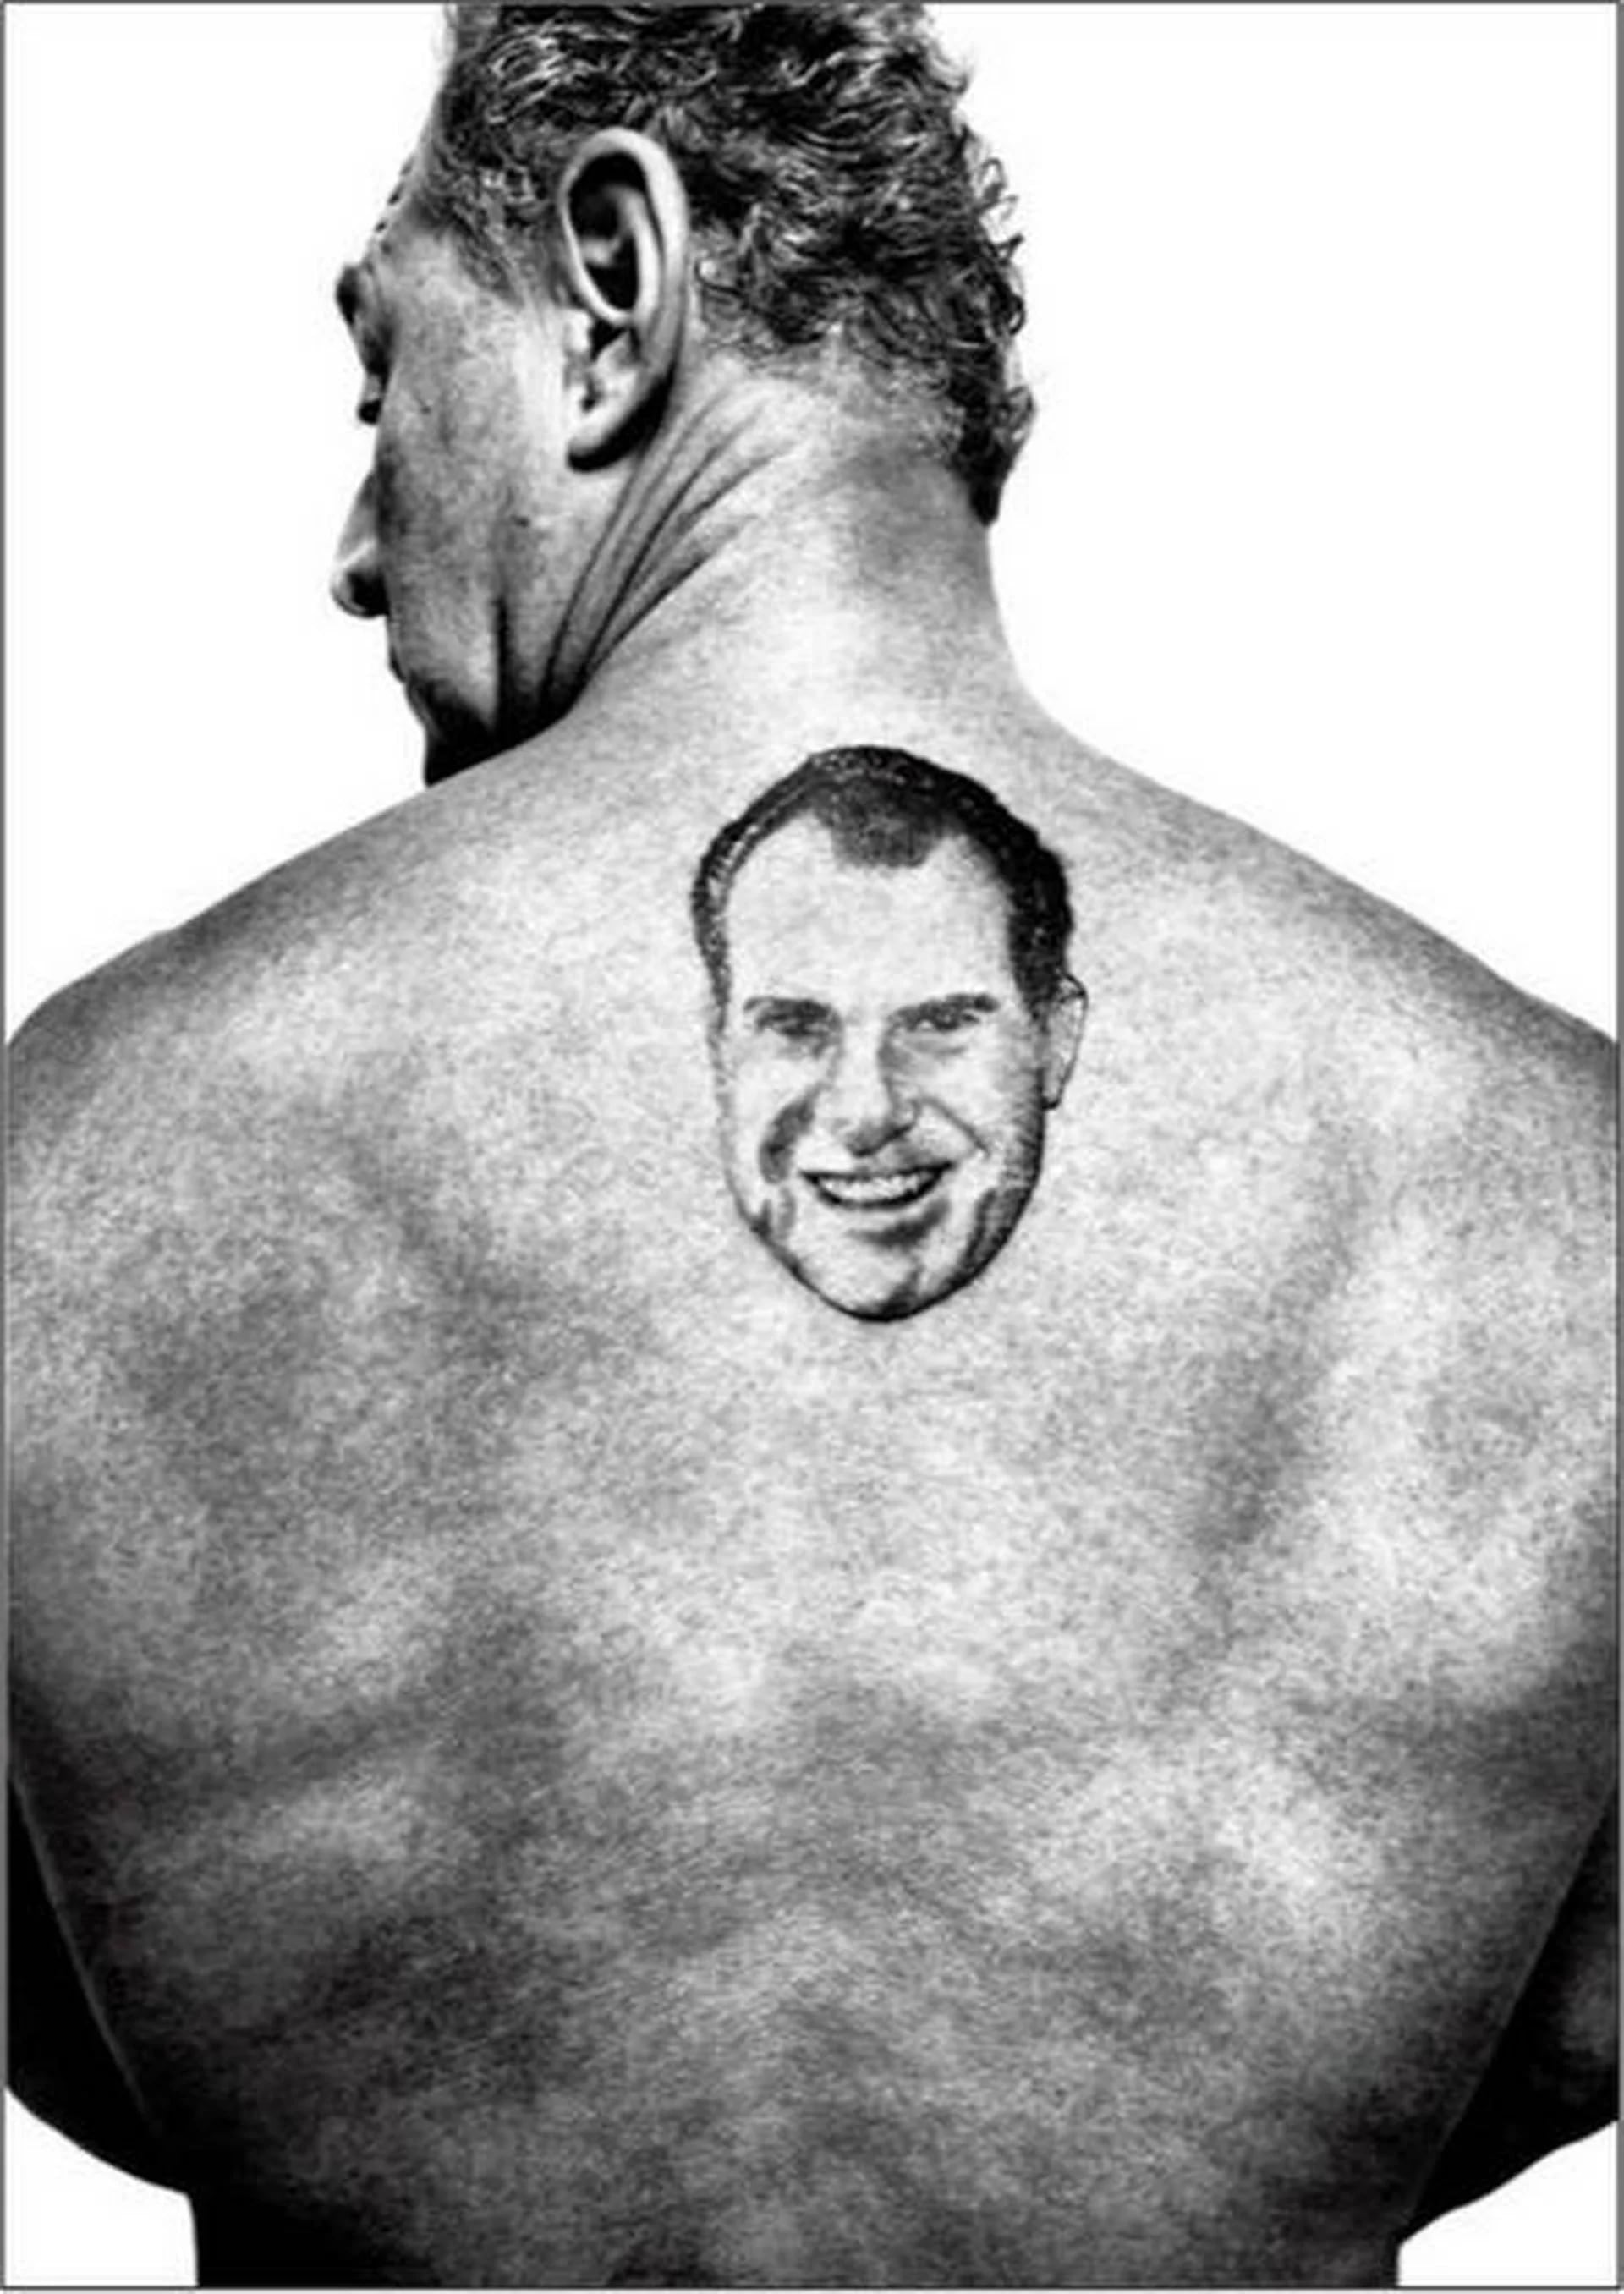 El tatuaje de Nixon en su espalda